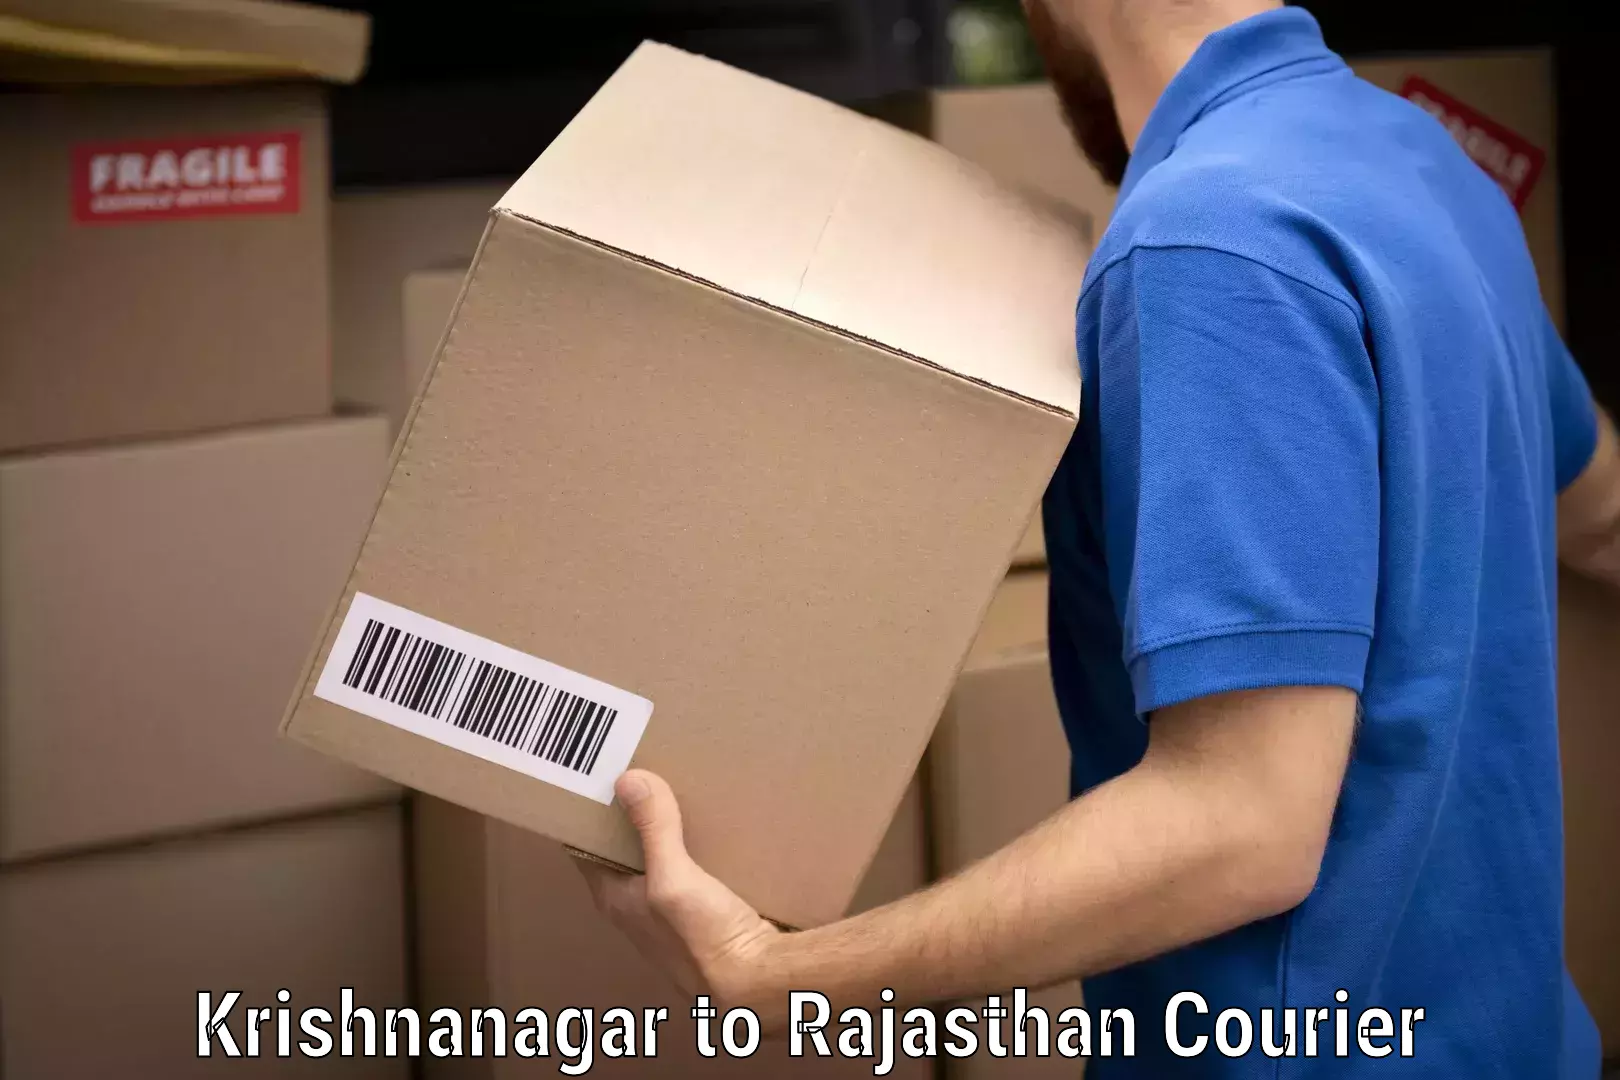 Furniture moving experts Krishnanagar to Rajasthan